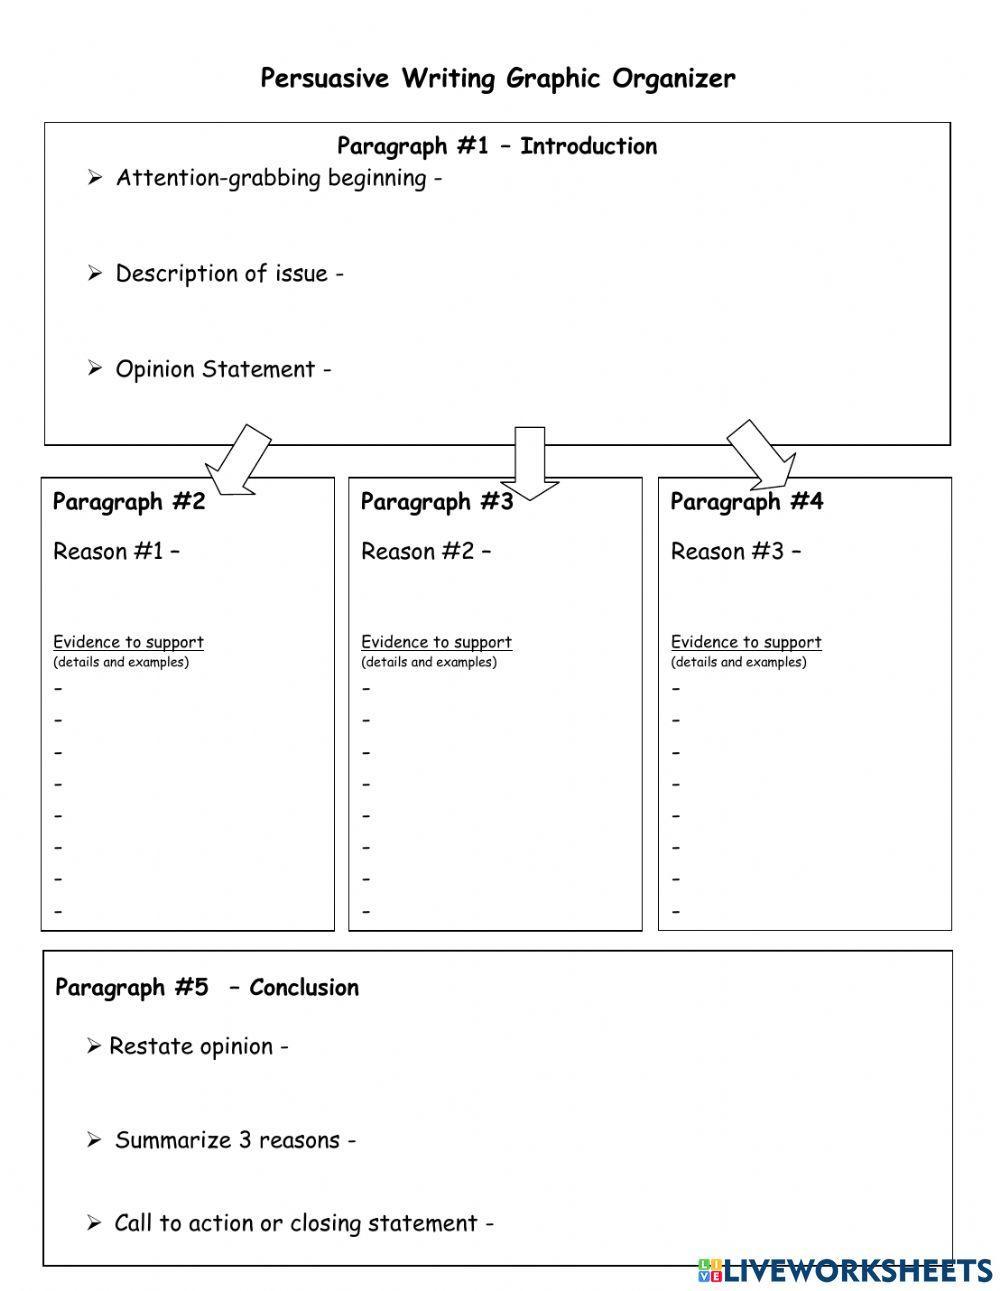 Persuasive essay graphic organizer